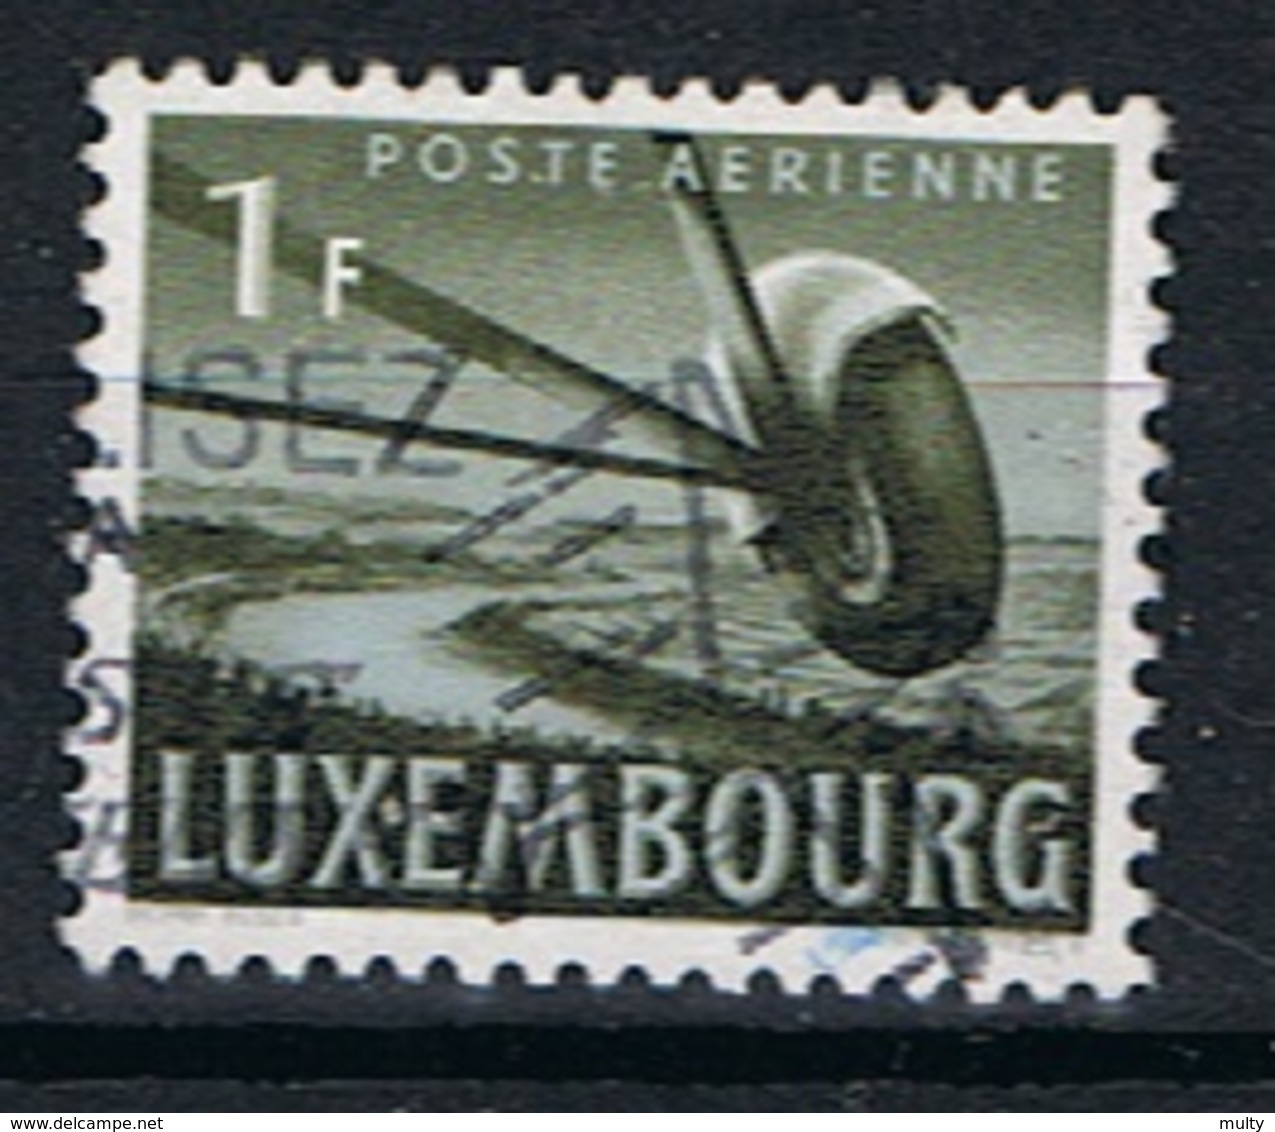 Luxemburg Y/T LP 7 (0) - Gebraucht